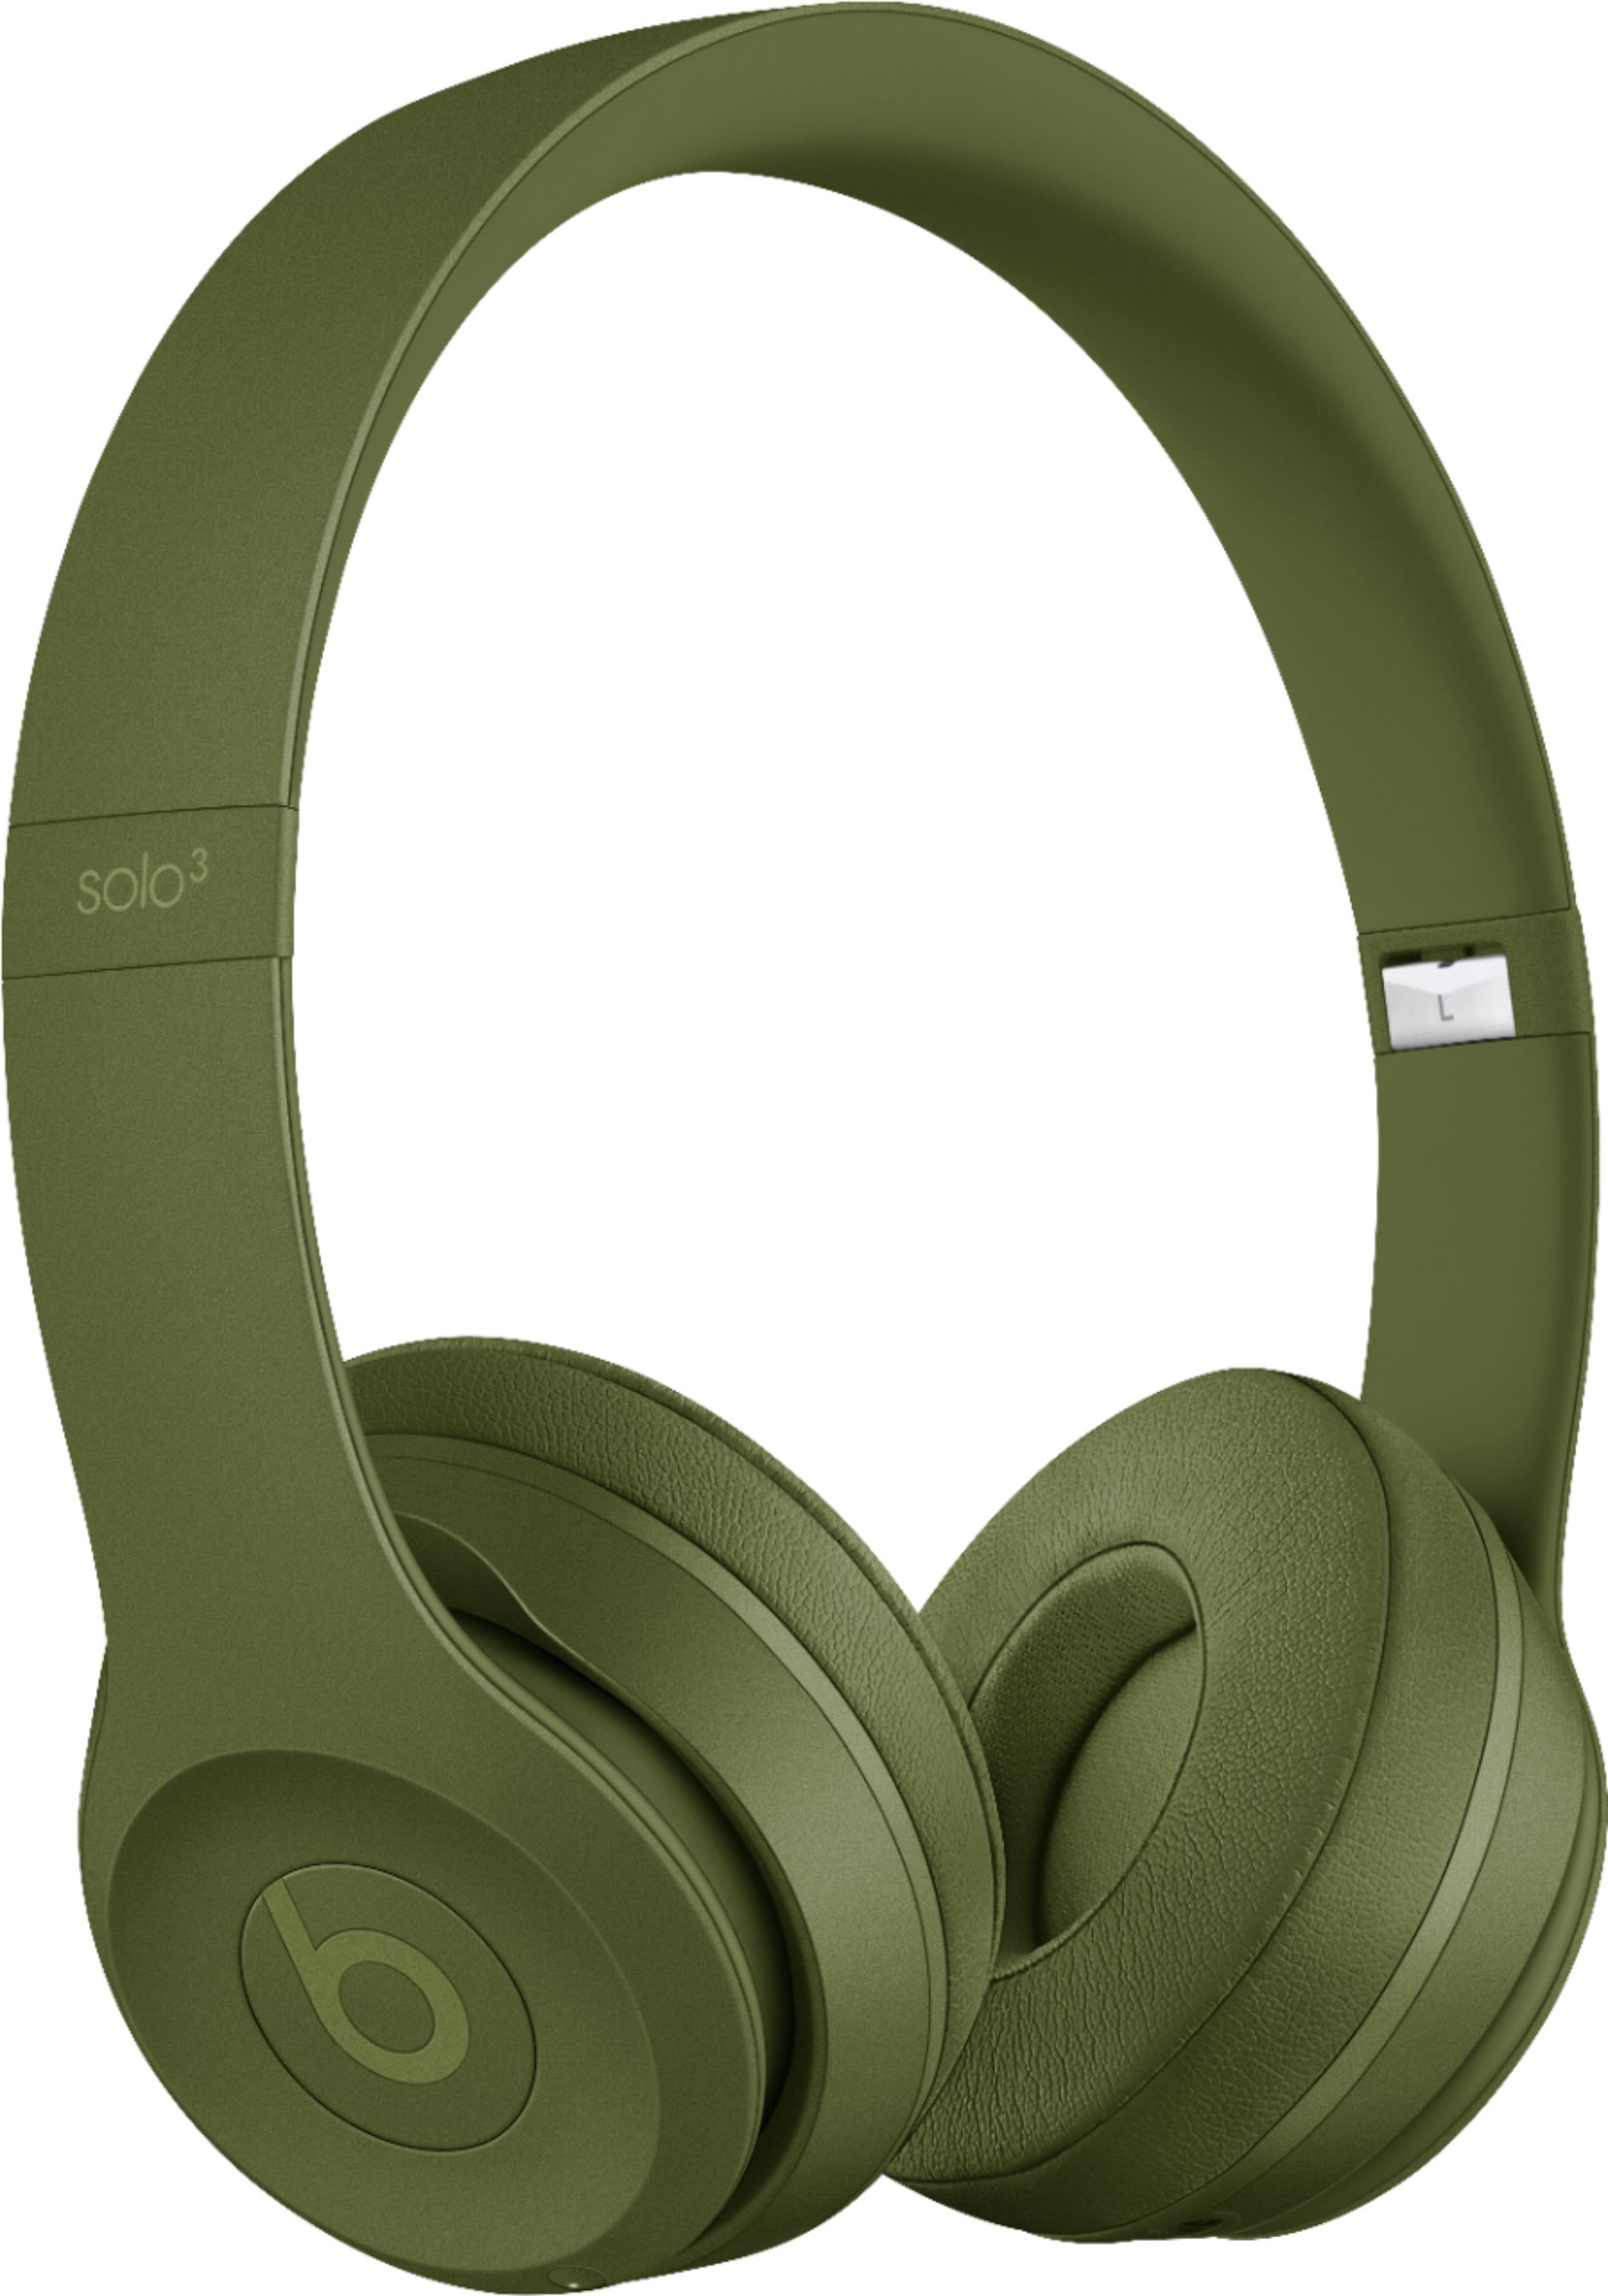 オーディオ機器 ヘッドフォン Beats by Dr. Dre Beats Solo³ Wireless Headphones  - Best Buy